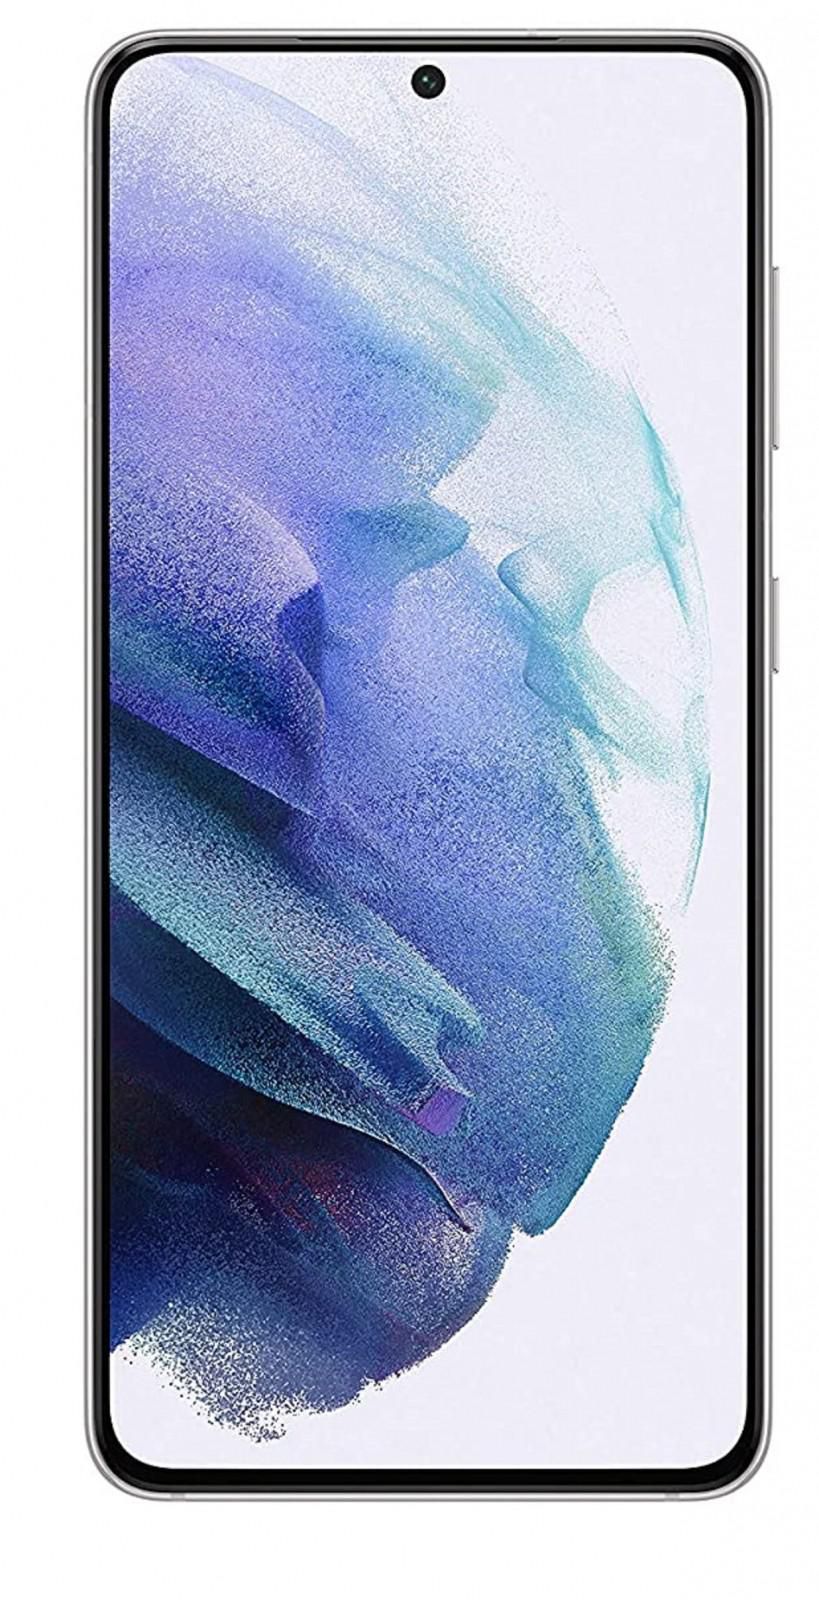 Samsung Galaxy S21 Dual SIM Smartphone, 256GB 8GB RAM 5G (UAE Version) -  Phantom White